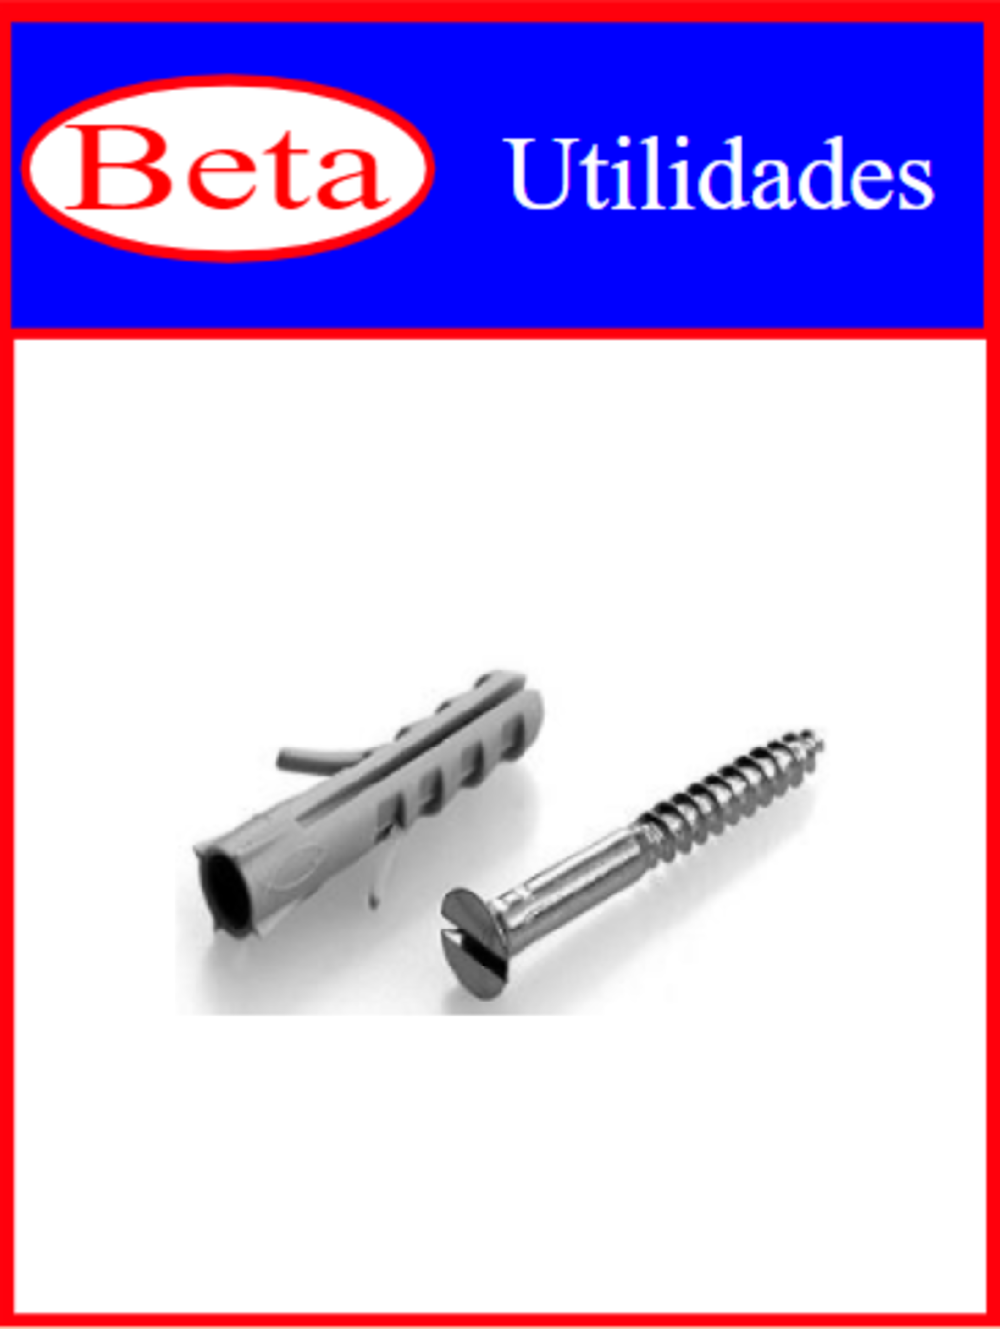 7898021401219 - BETA UTILIDADES PARAFUS C/ BUCHA 6 C/6